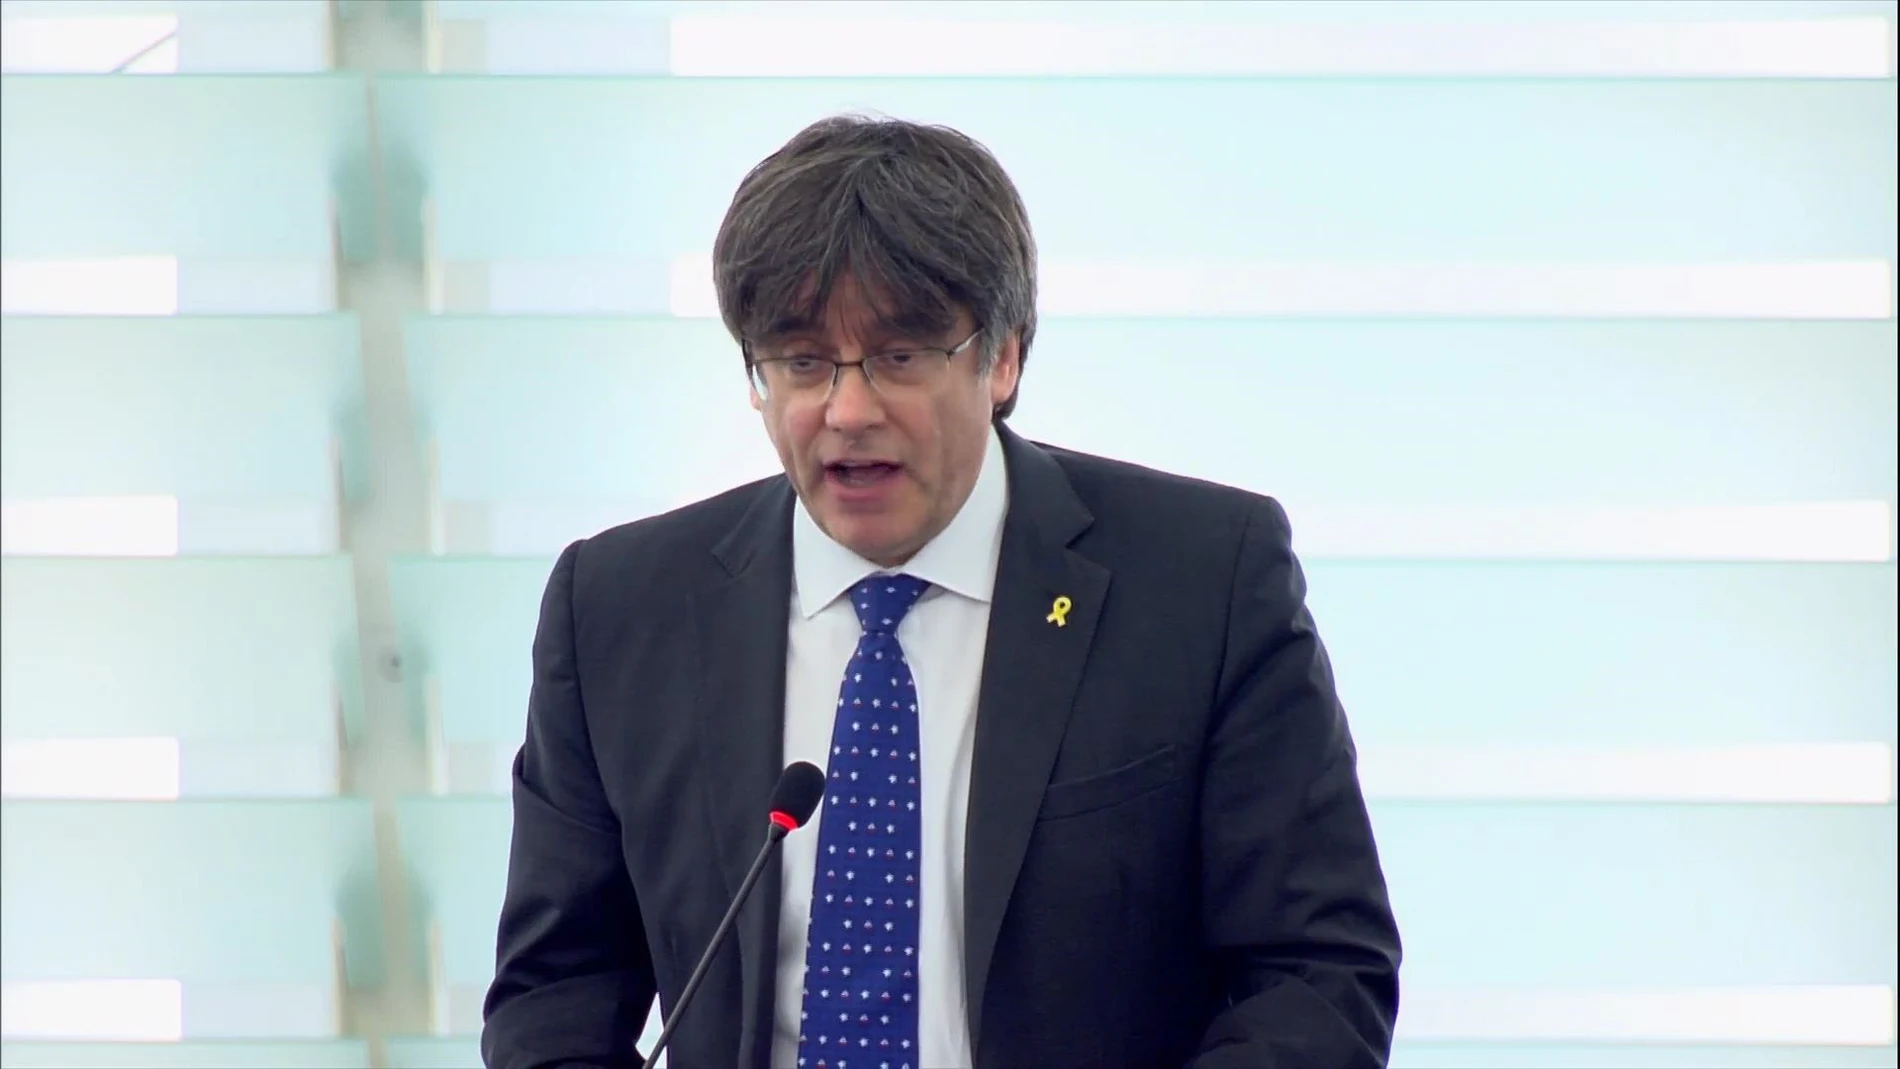 VÍDEO: Puigdemont pide en su primera intervención ante la Eurocámara un mecanismo europeo para la autodeterminación